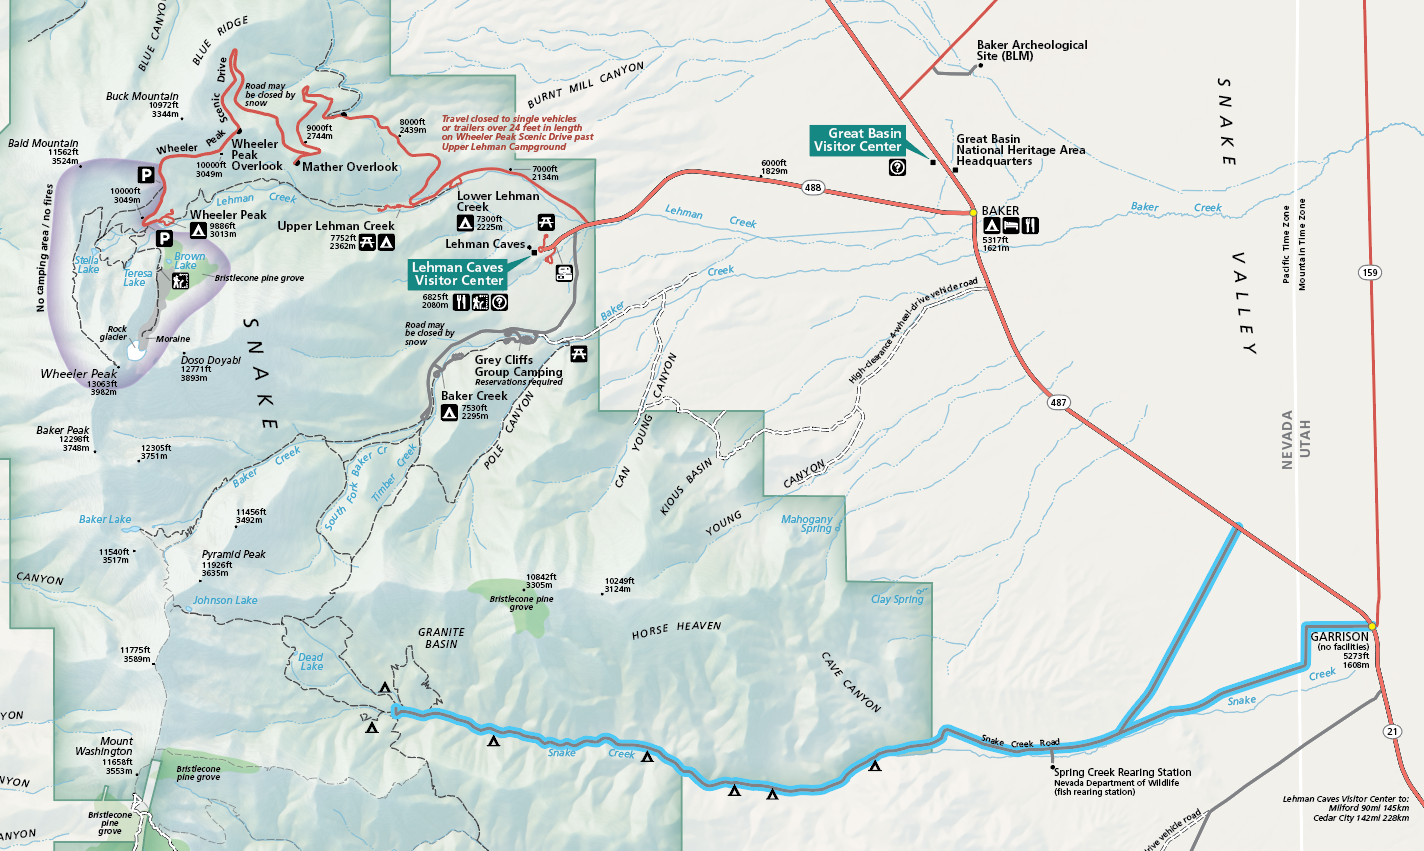 Snake Creek Trails - Great Basin National Park (U.S. National Park Service)